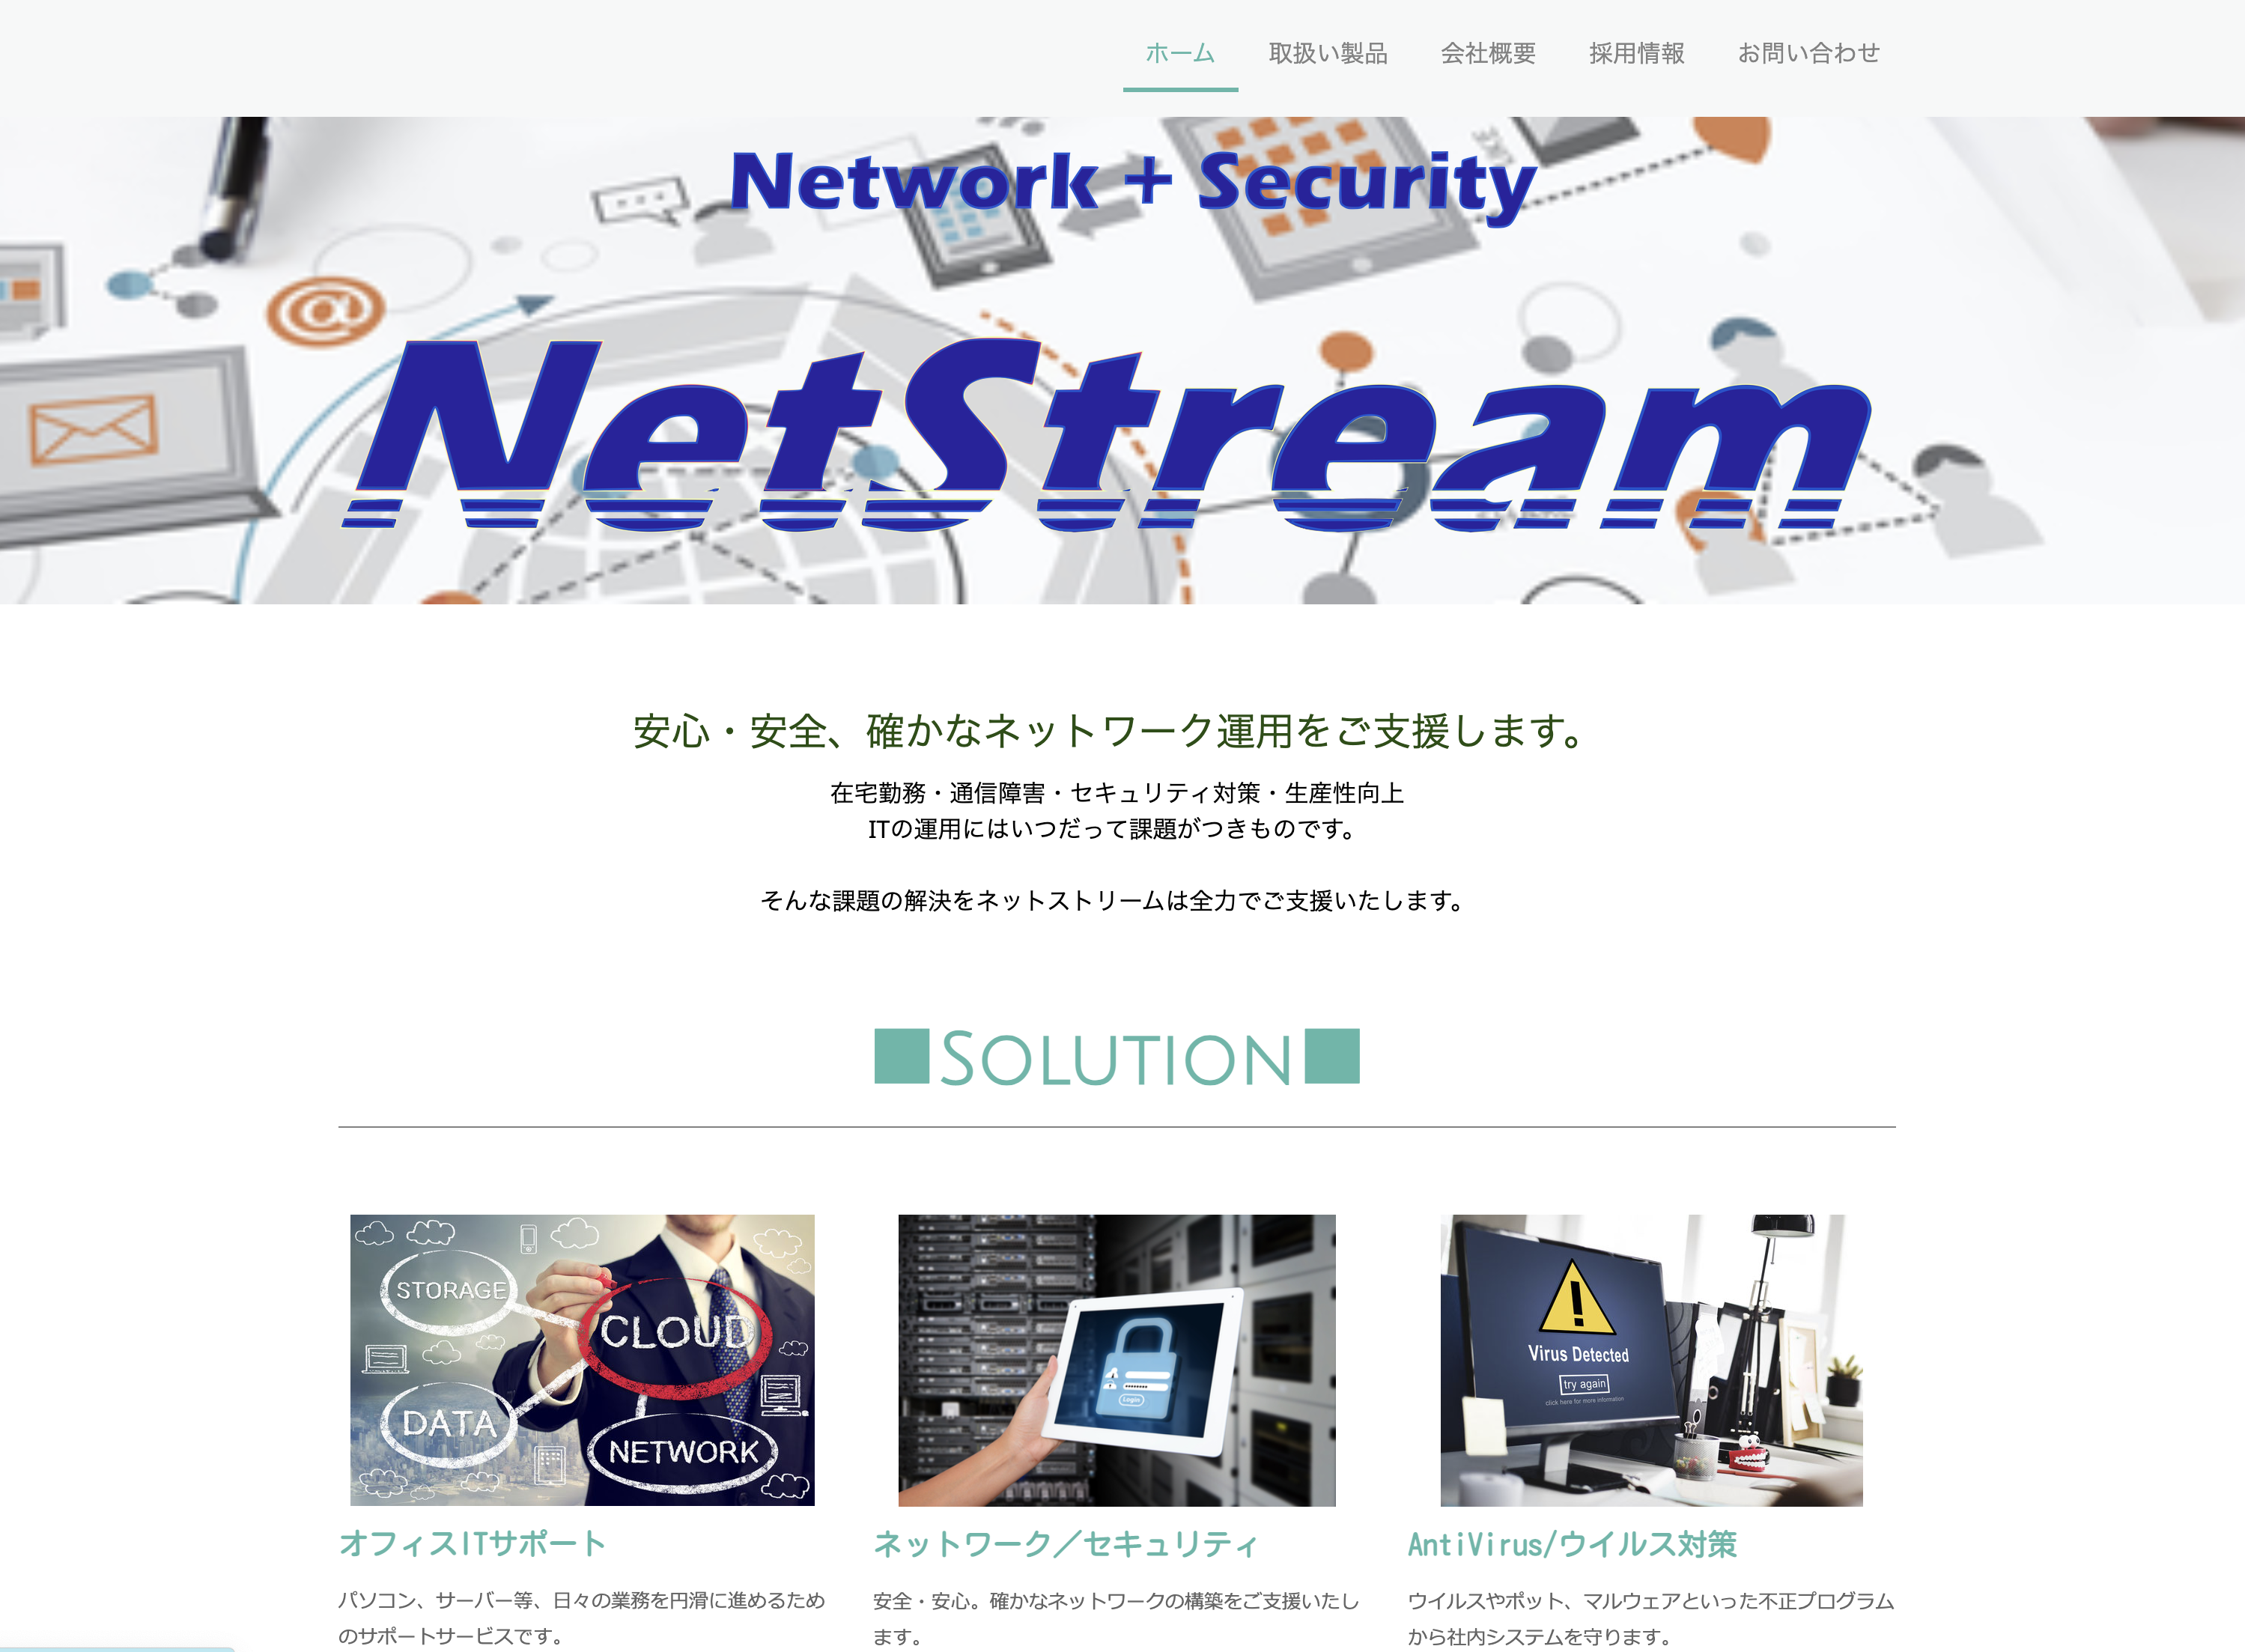 ネットストリーム株式会社のネットストリーム株式会社:ネットワーク構築サービス